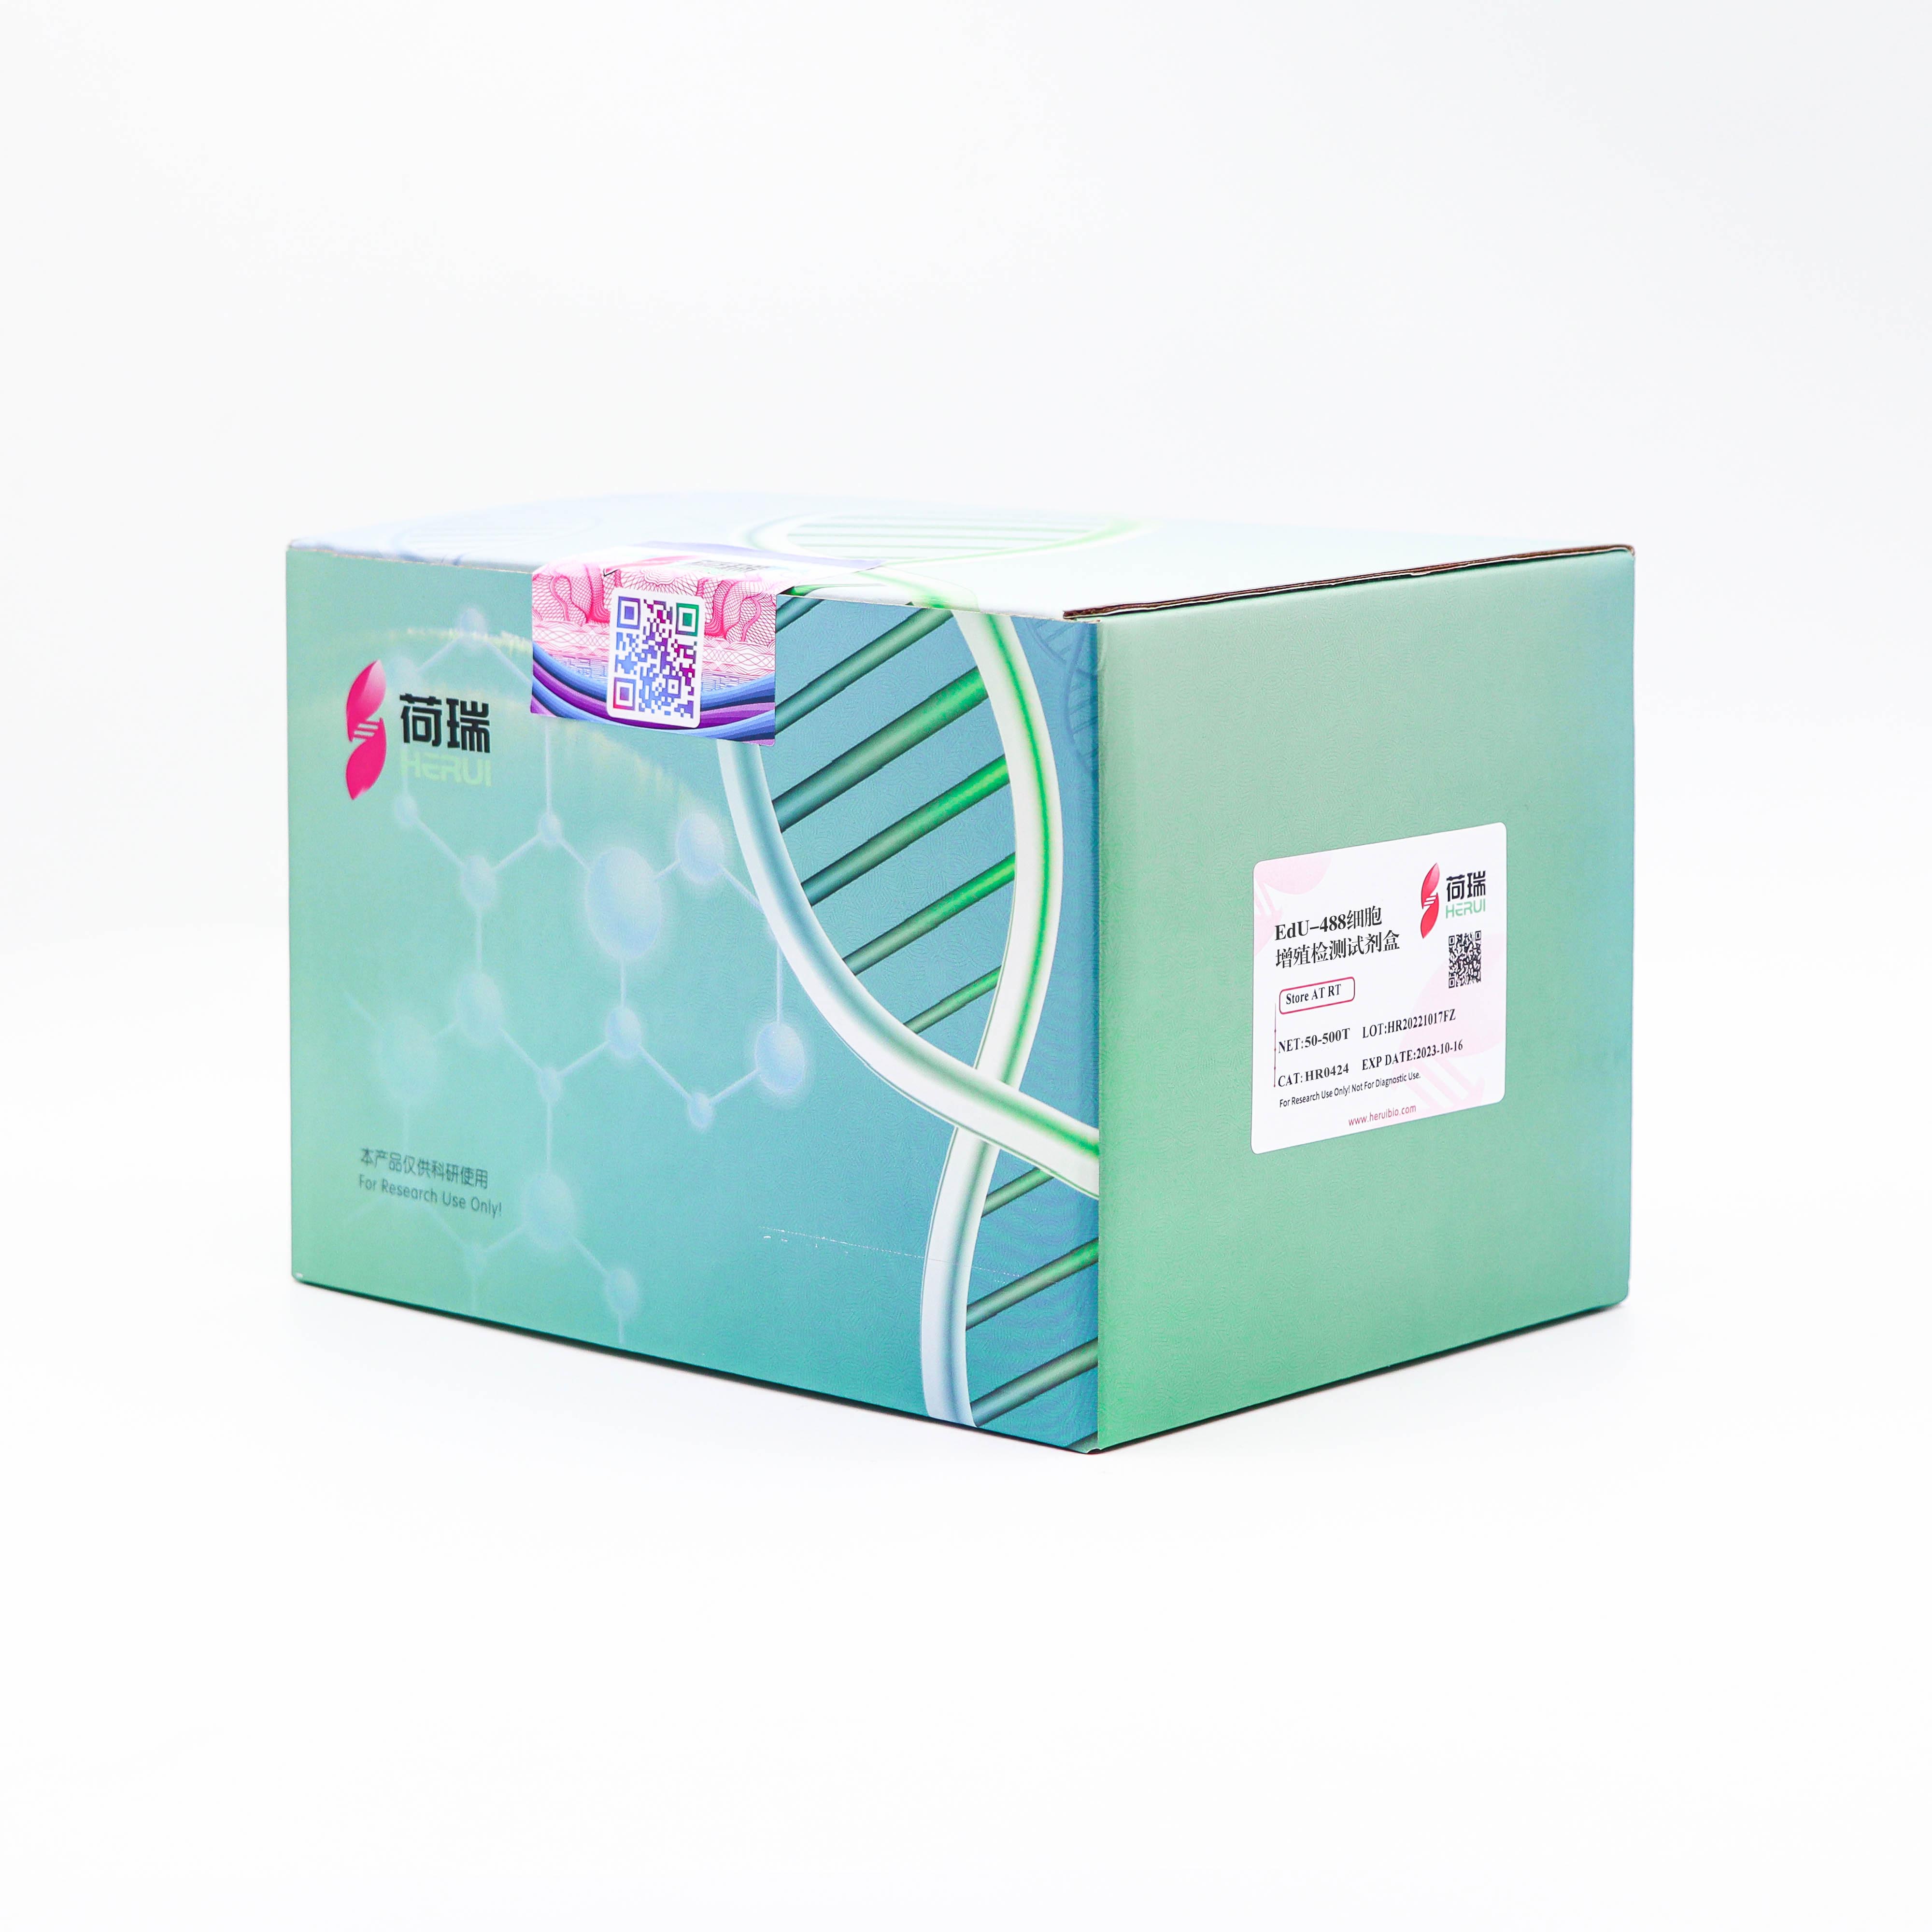 EdU-488细胞增殖检测试剂盒(适用于FACS、FM)